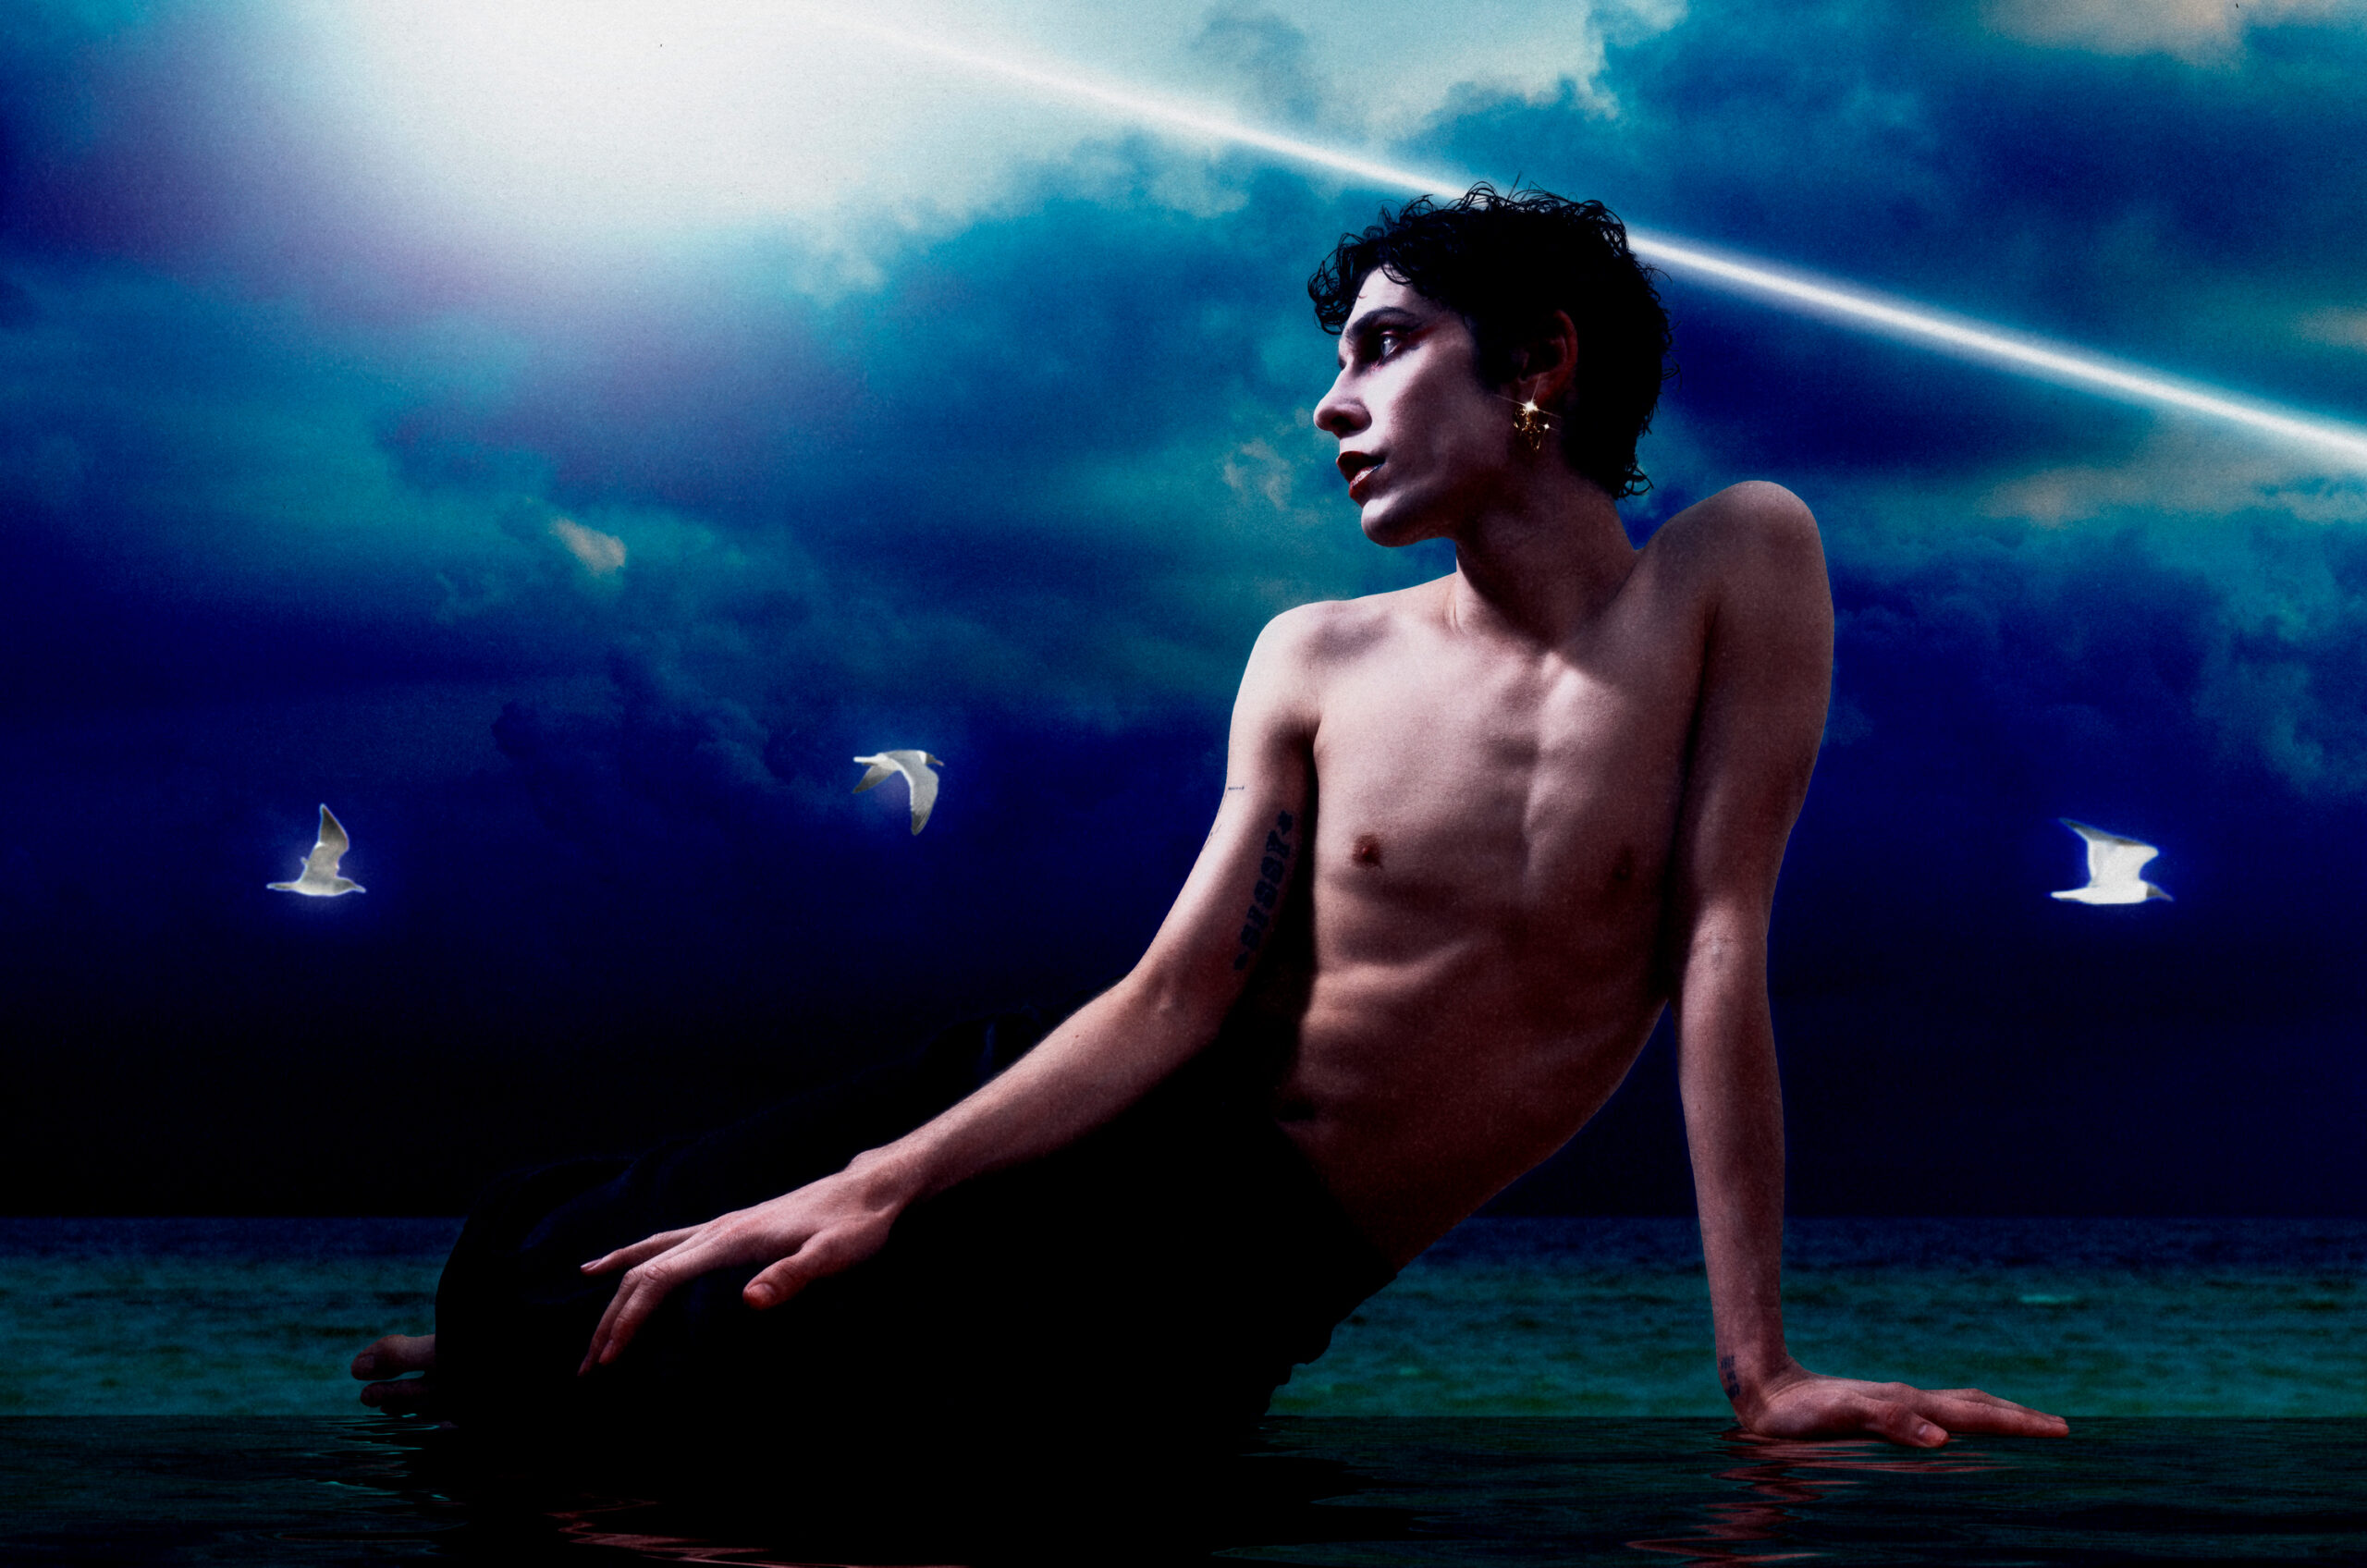 El artista Boychik nos cuenta en su álbum el poder de la homosexualidad